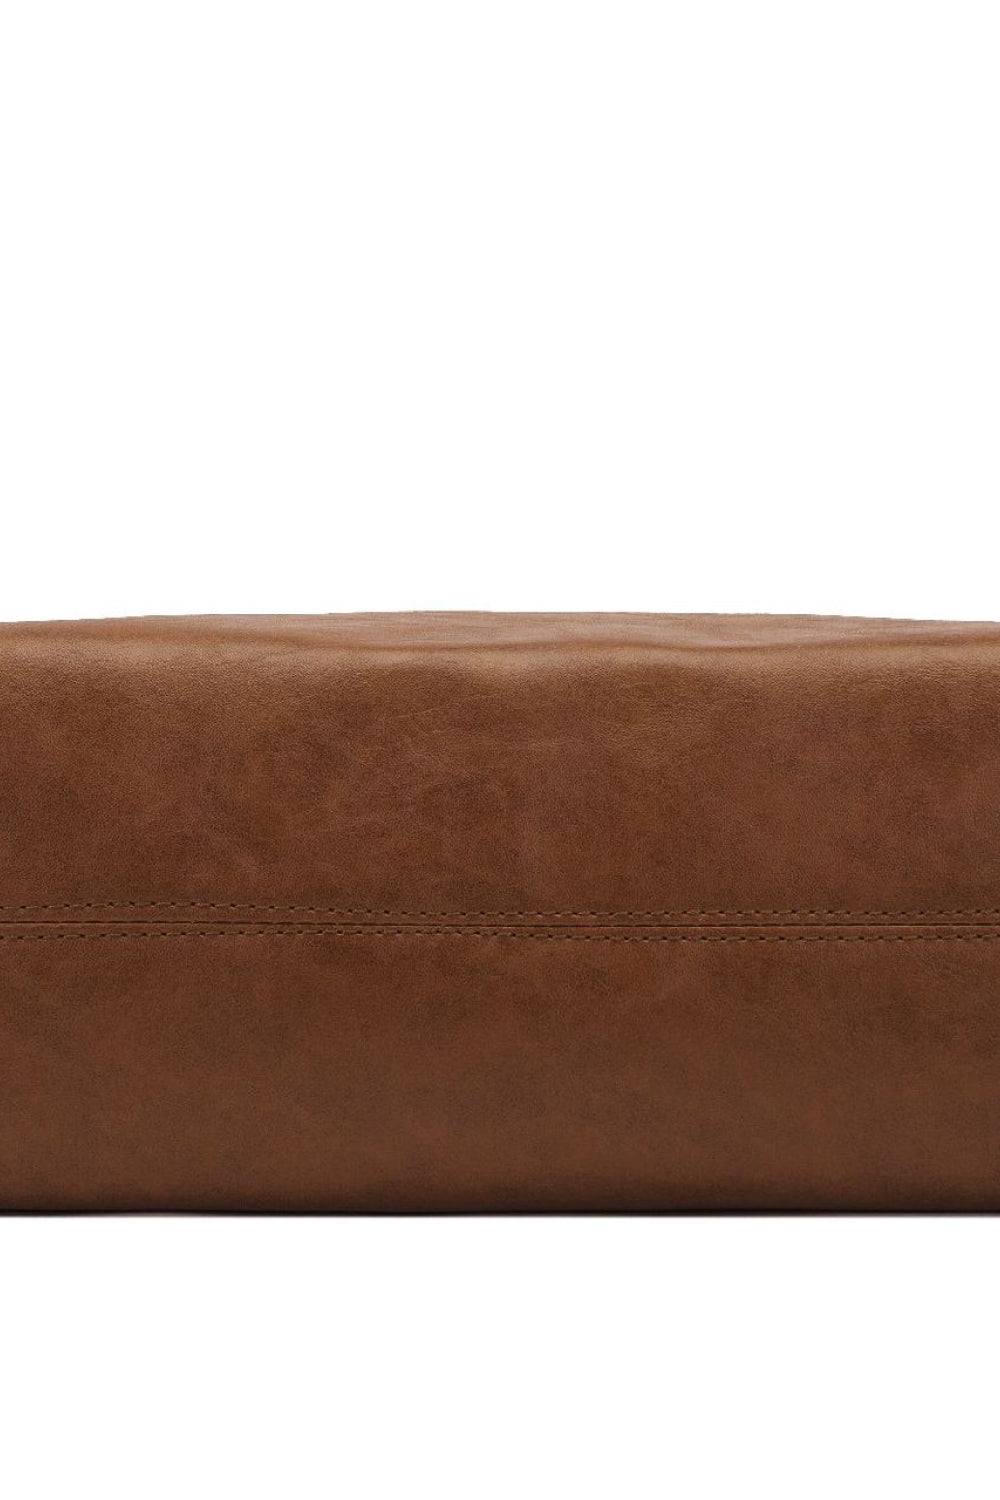 Large PU Leather Crossbody Bag - Thandynie